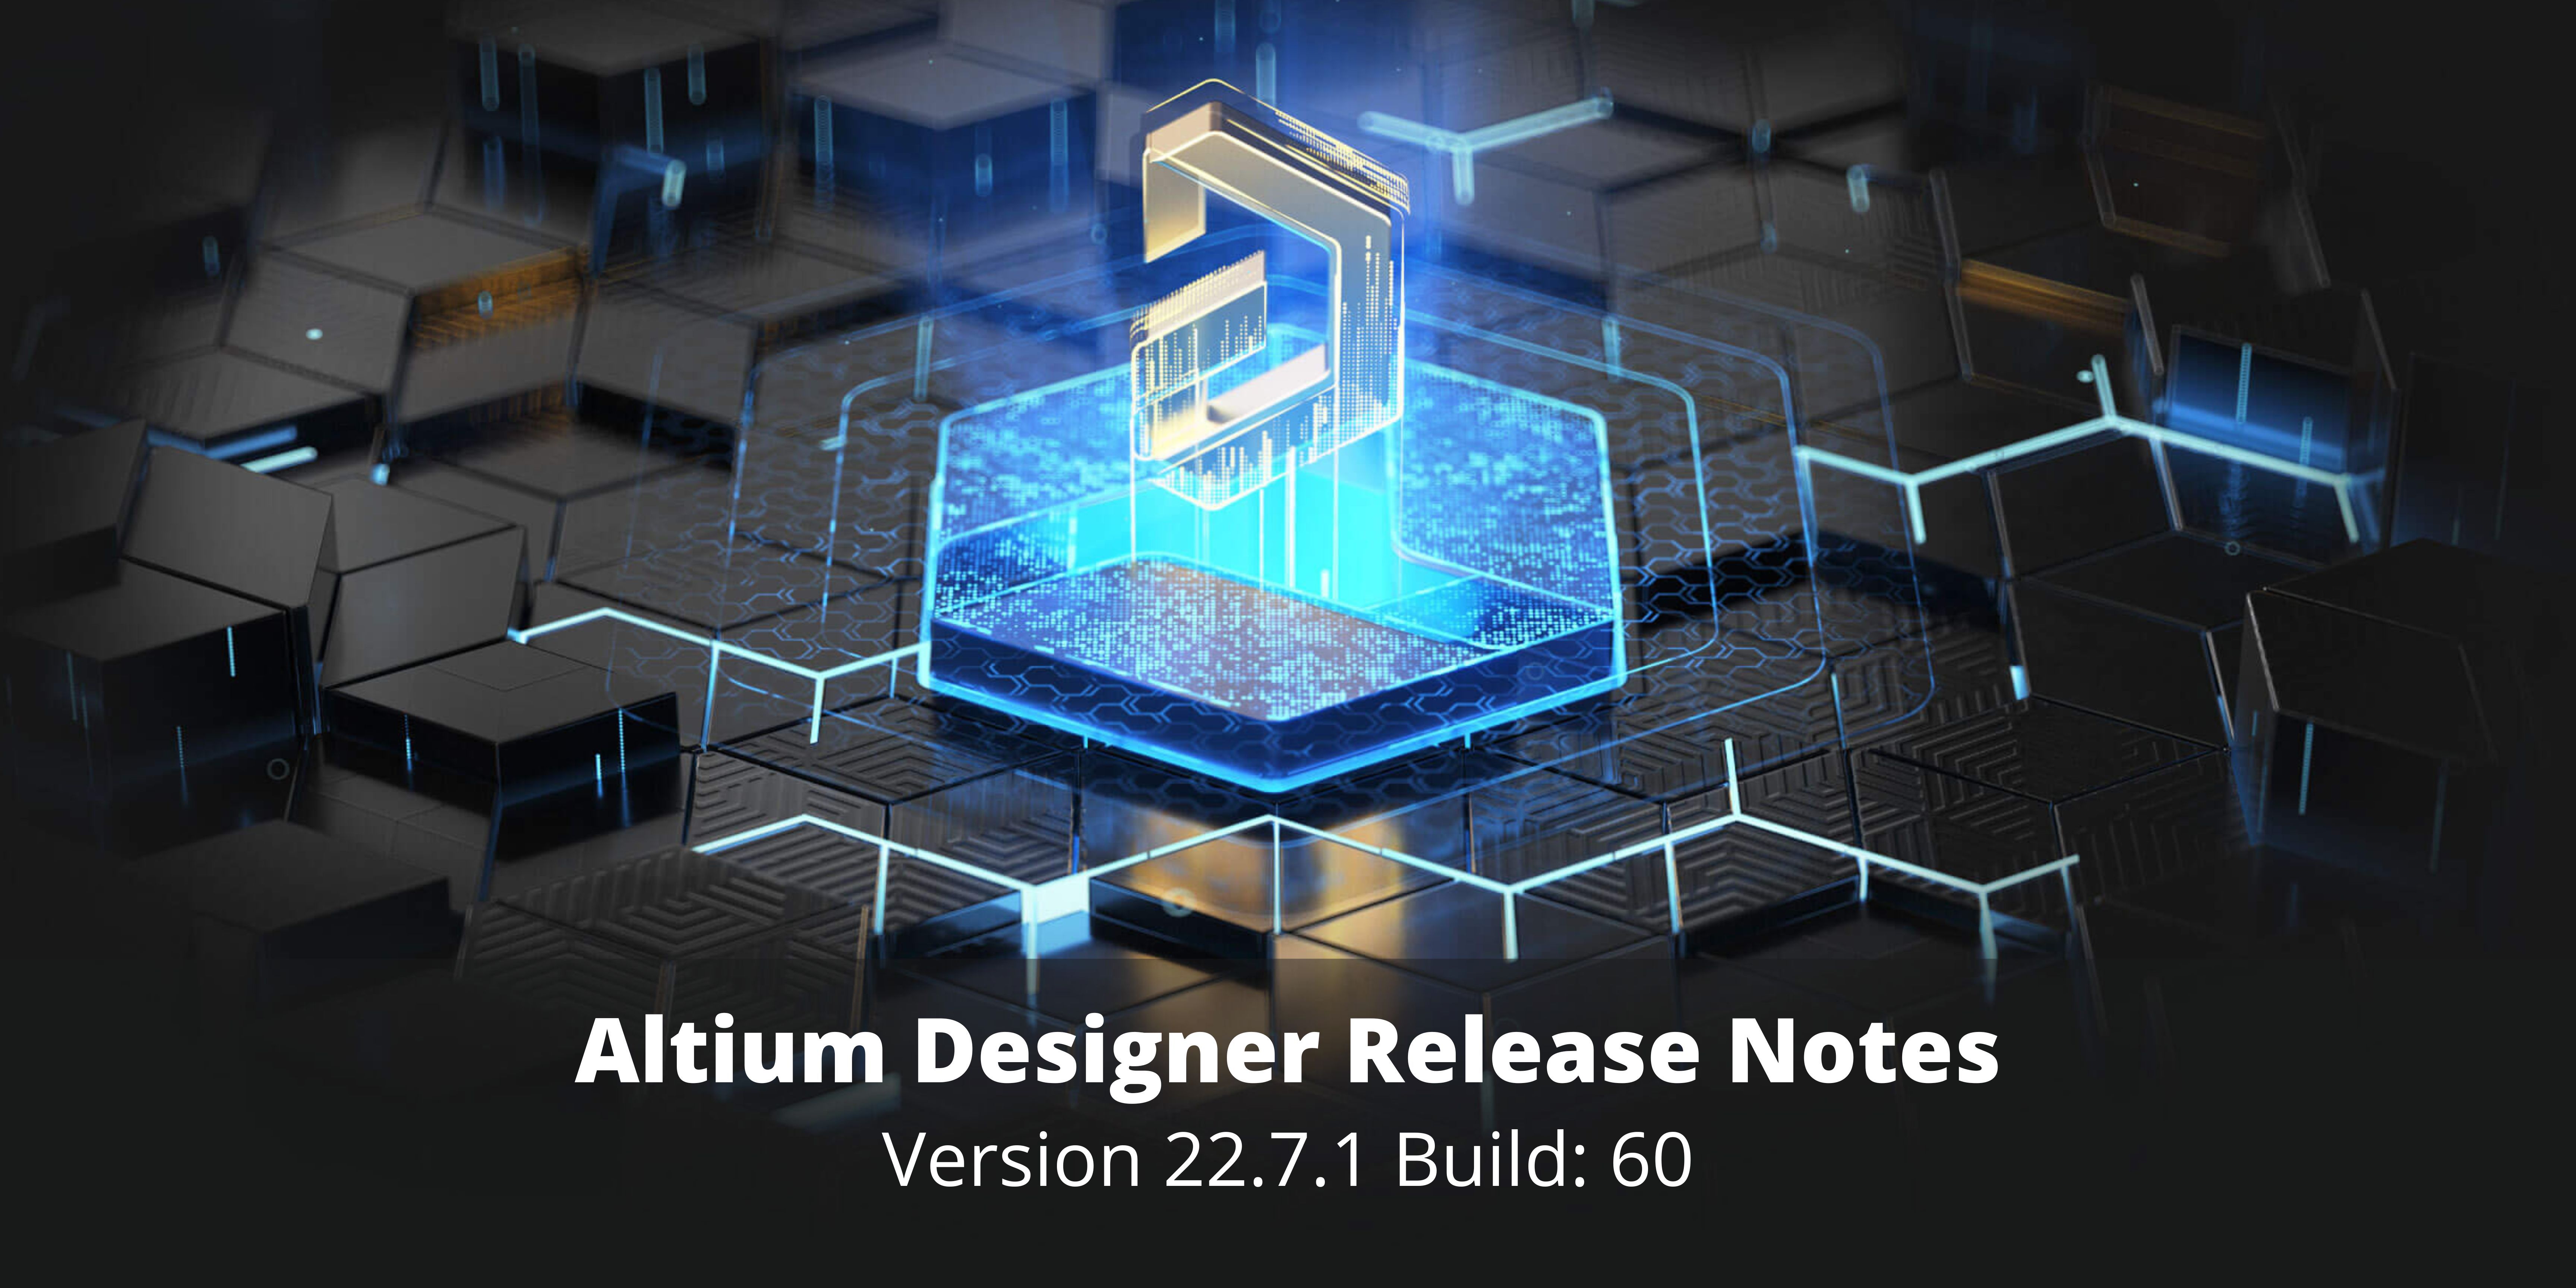 instal the new version for iphoneAltium Designer 23.9.2.47